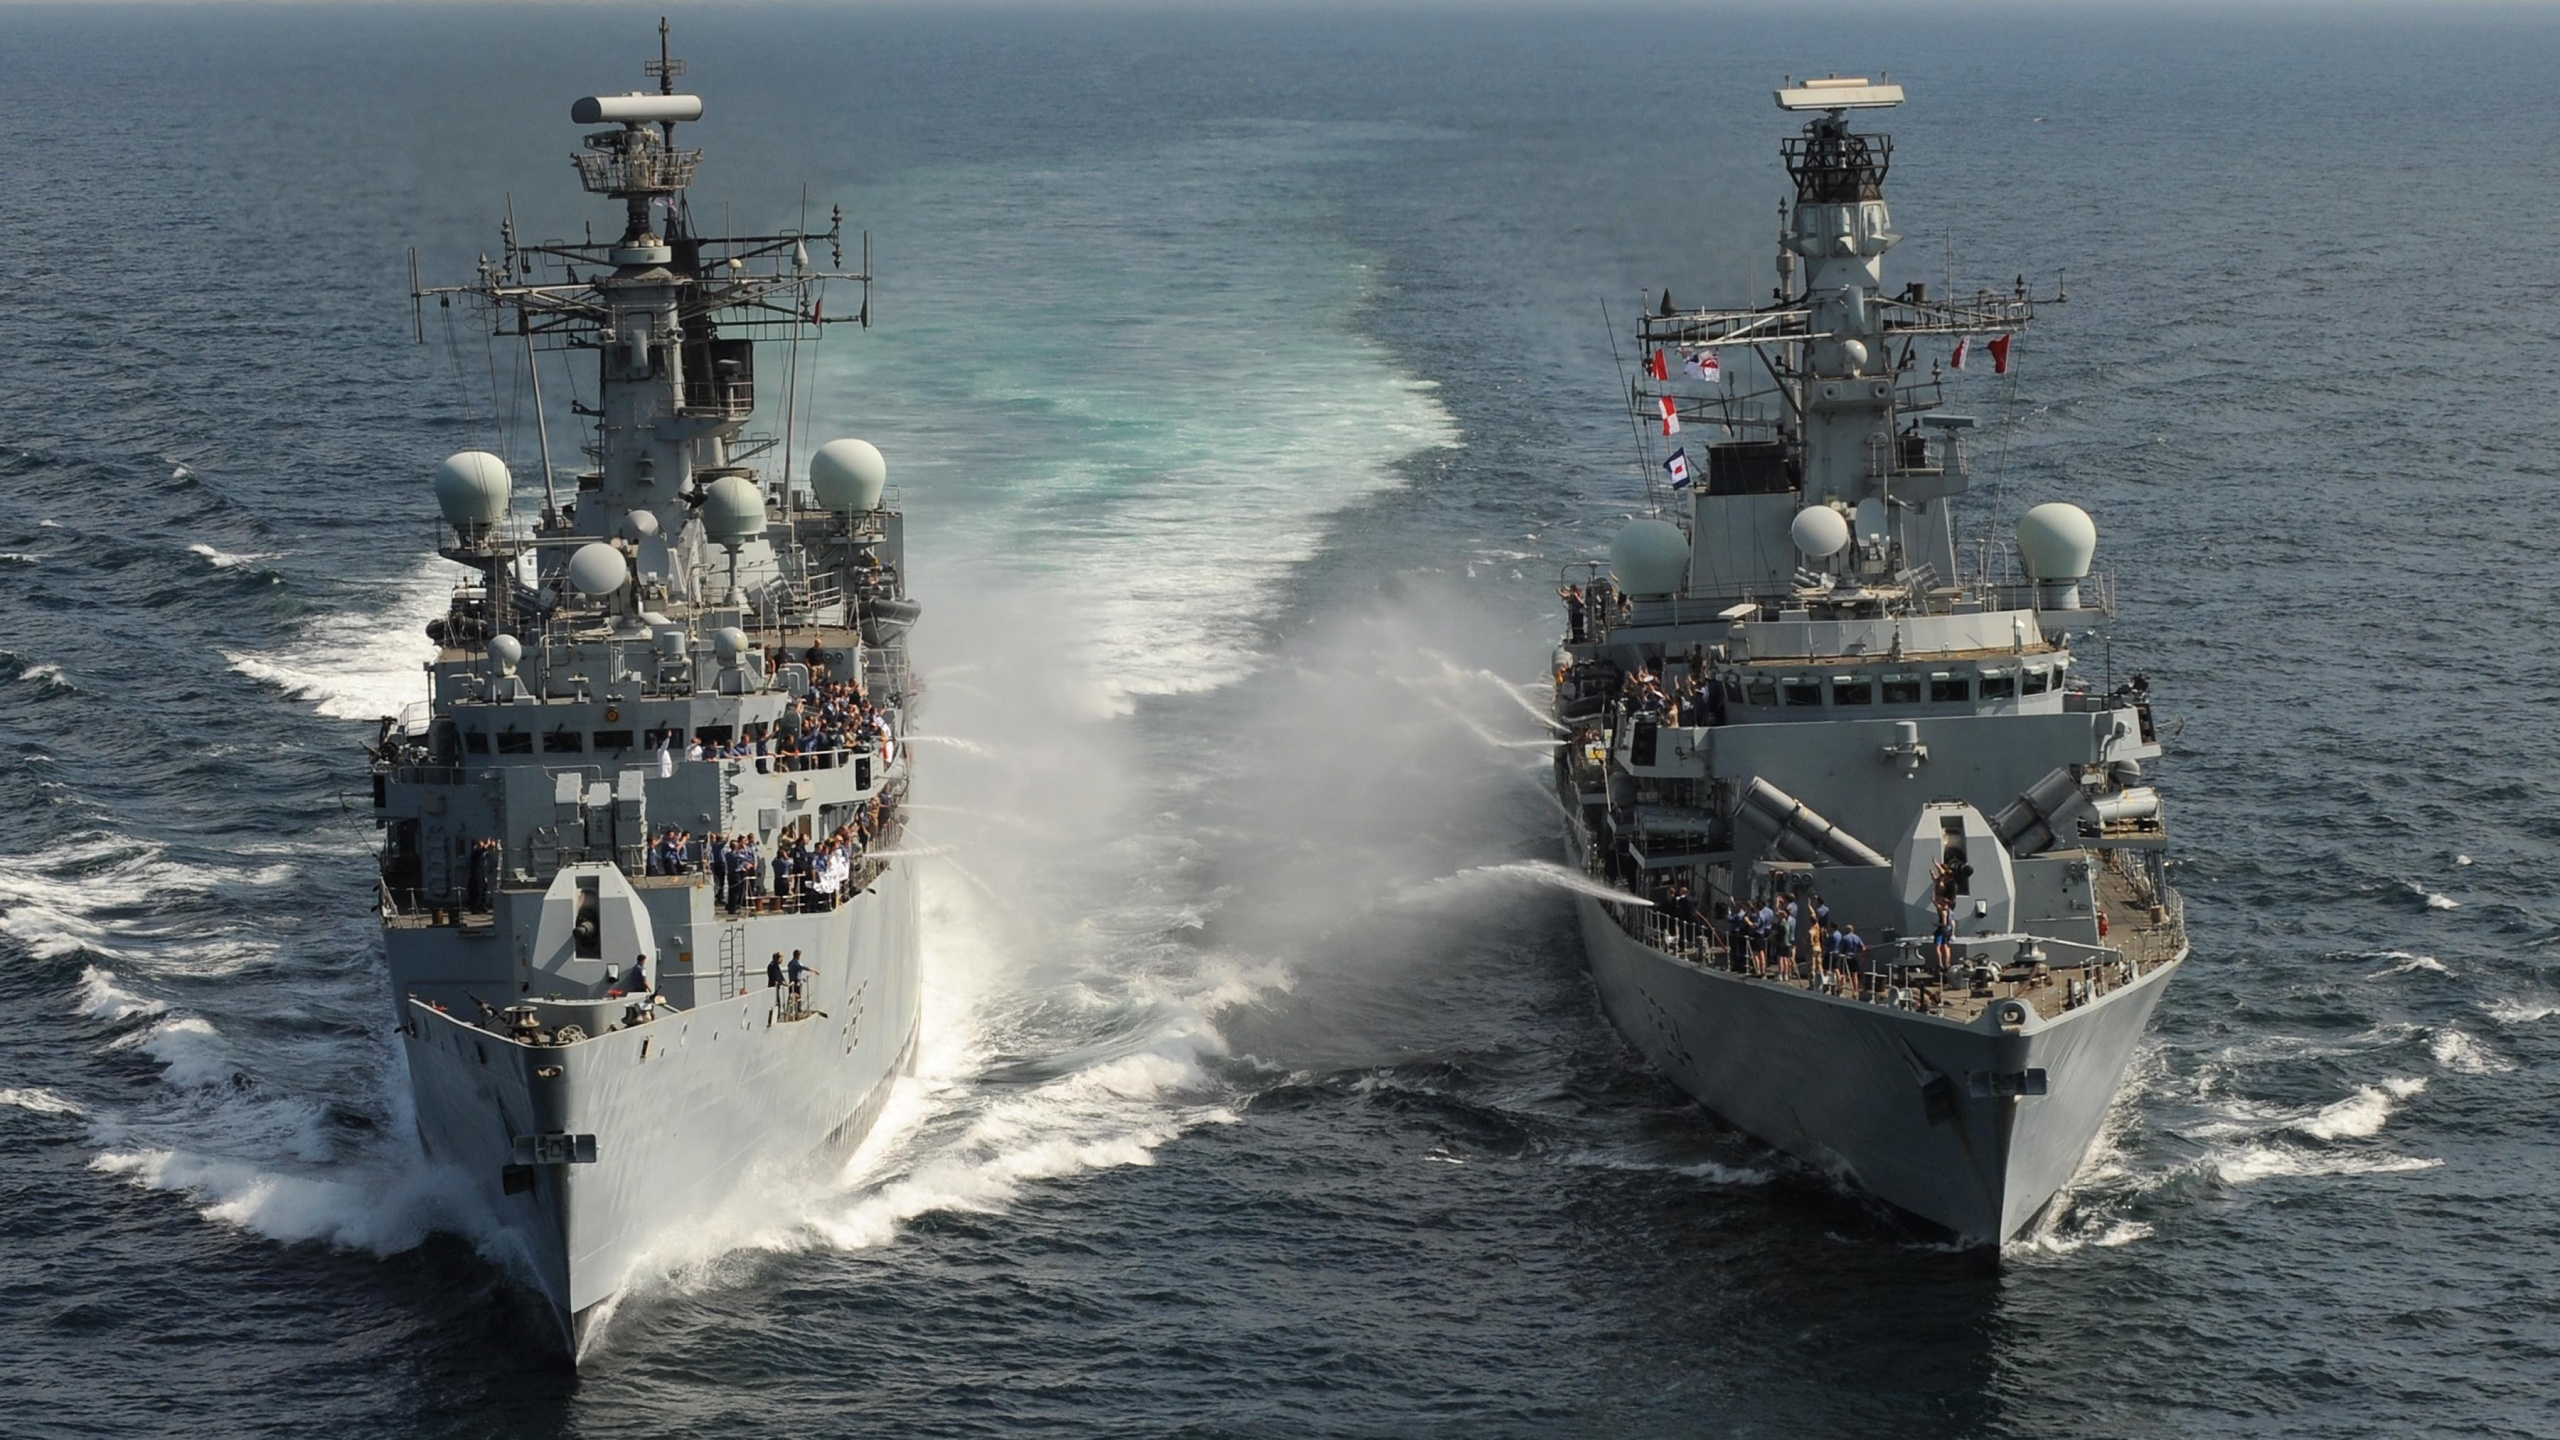 军舰, 海军的船, 战舰, 海军, 两栖攻击舰 壁纸 2560x1440 允许